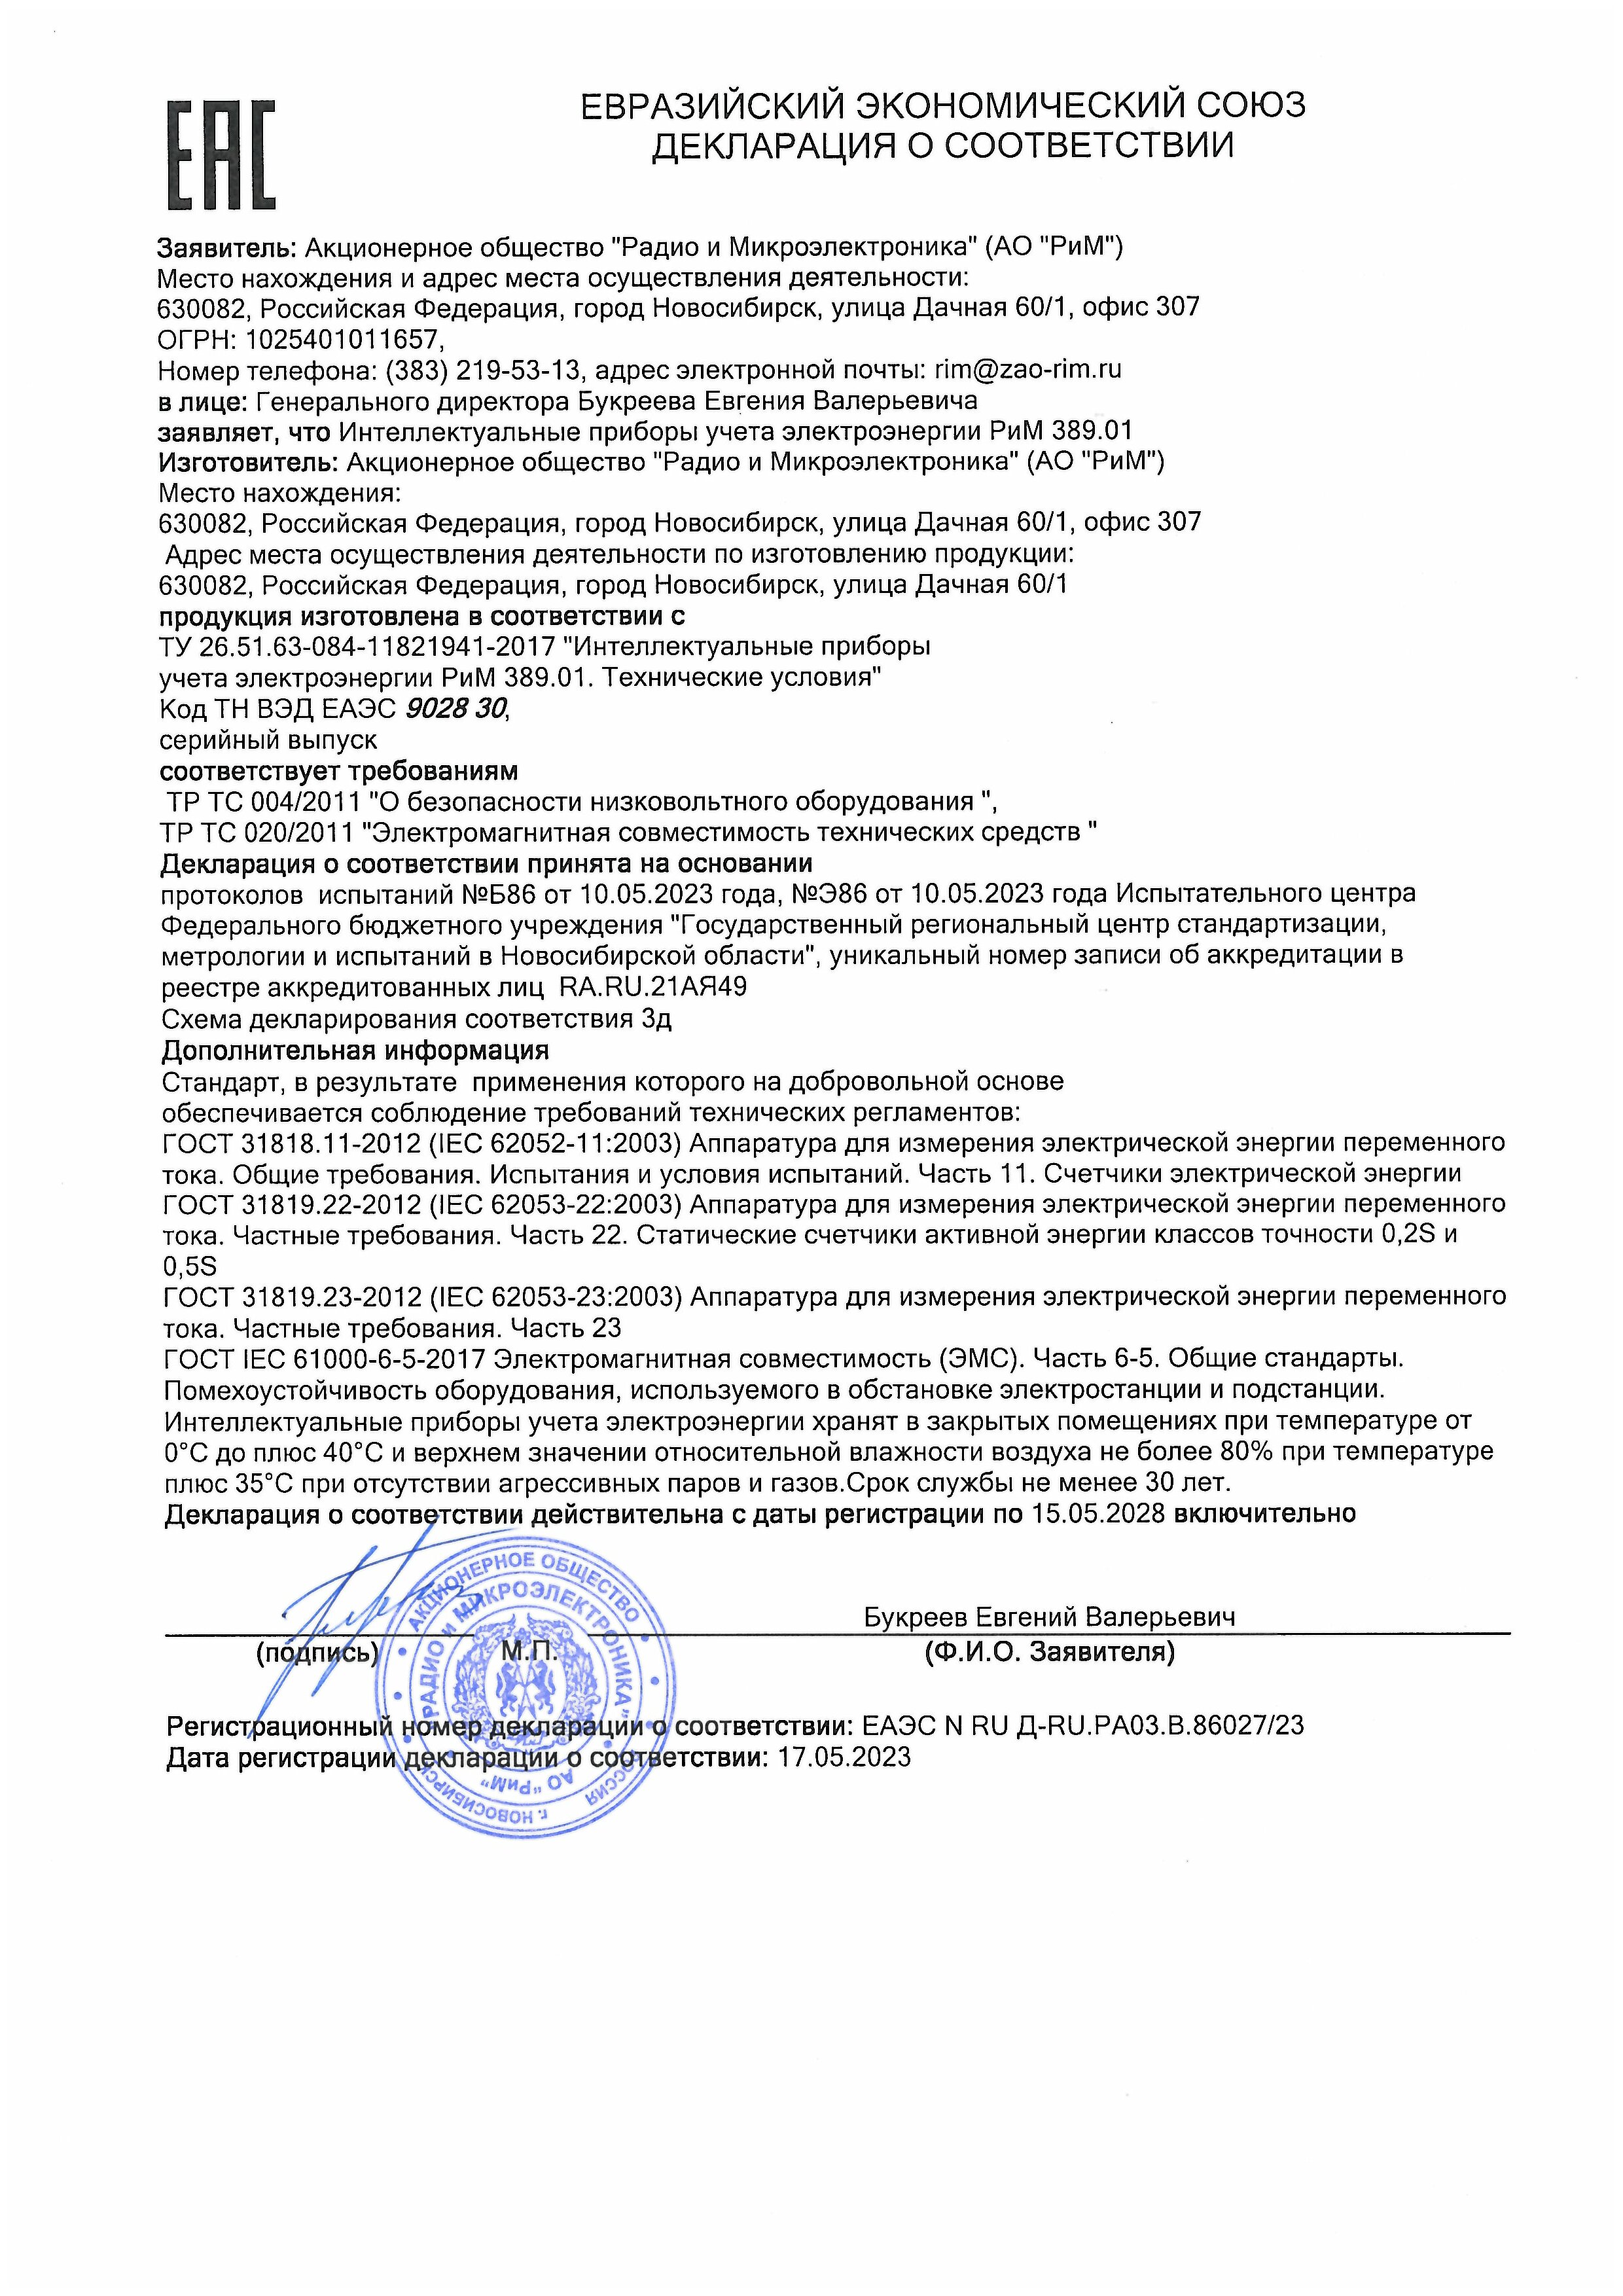 Сертификат соответствия РиМ 108